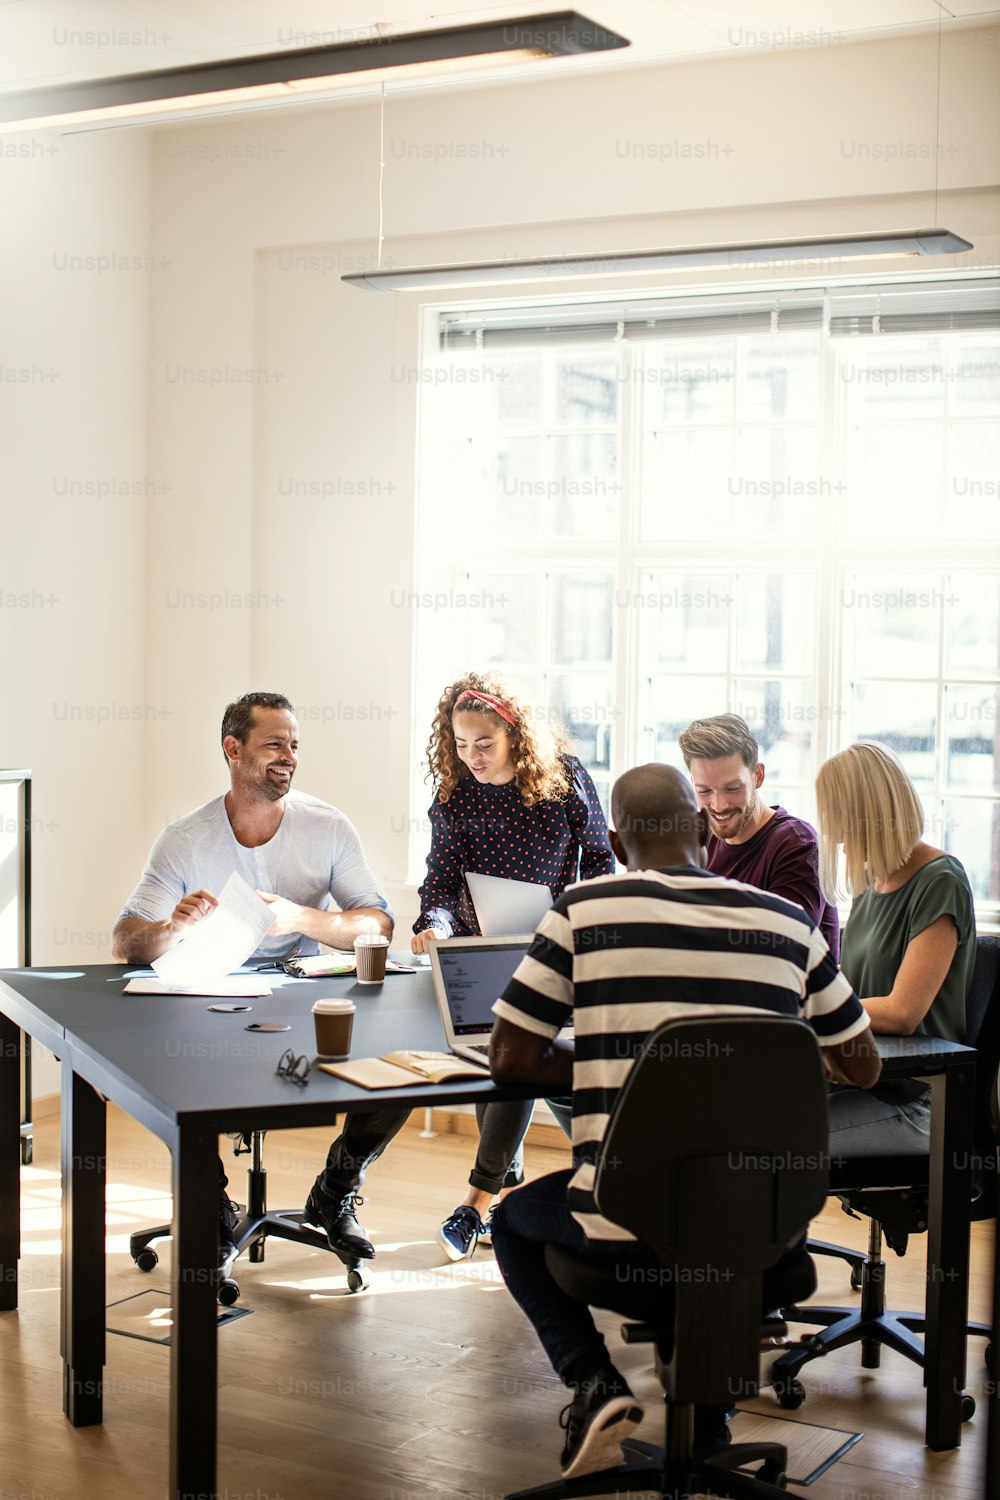 Un grupo diverso de jóvenes diseñadores sonrientes que trabajan juntos alrededor de una mesa de la sala de juntas en una oficina